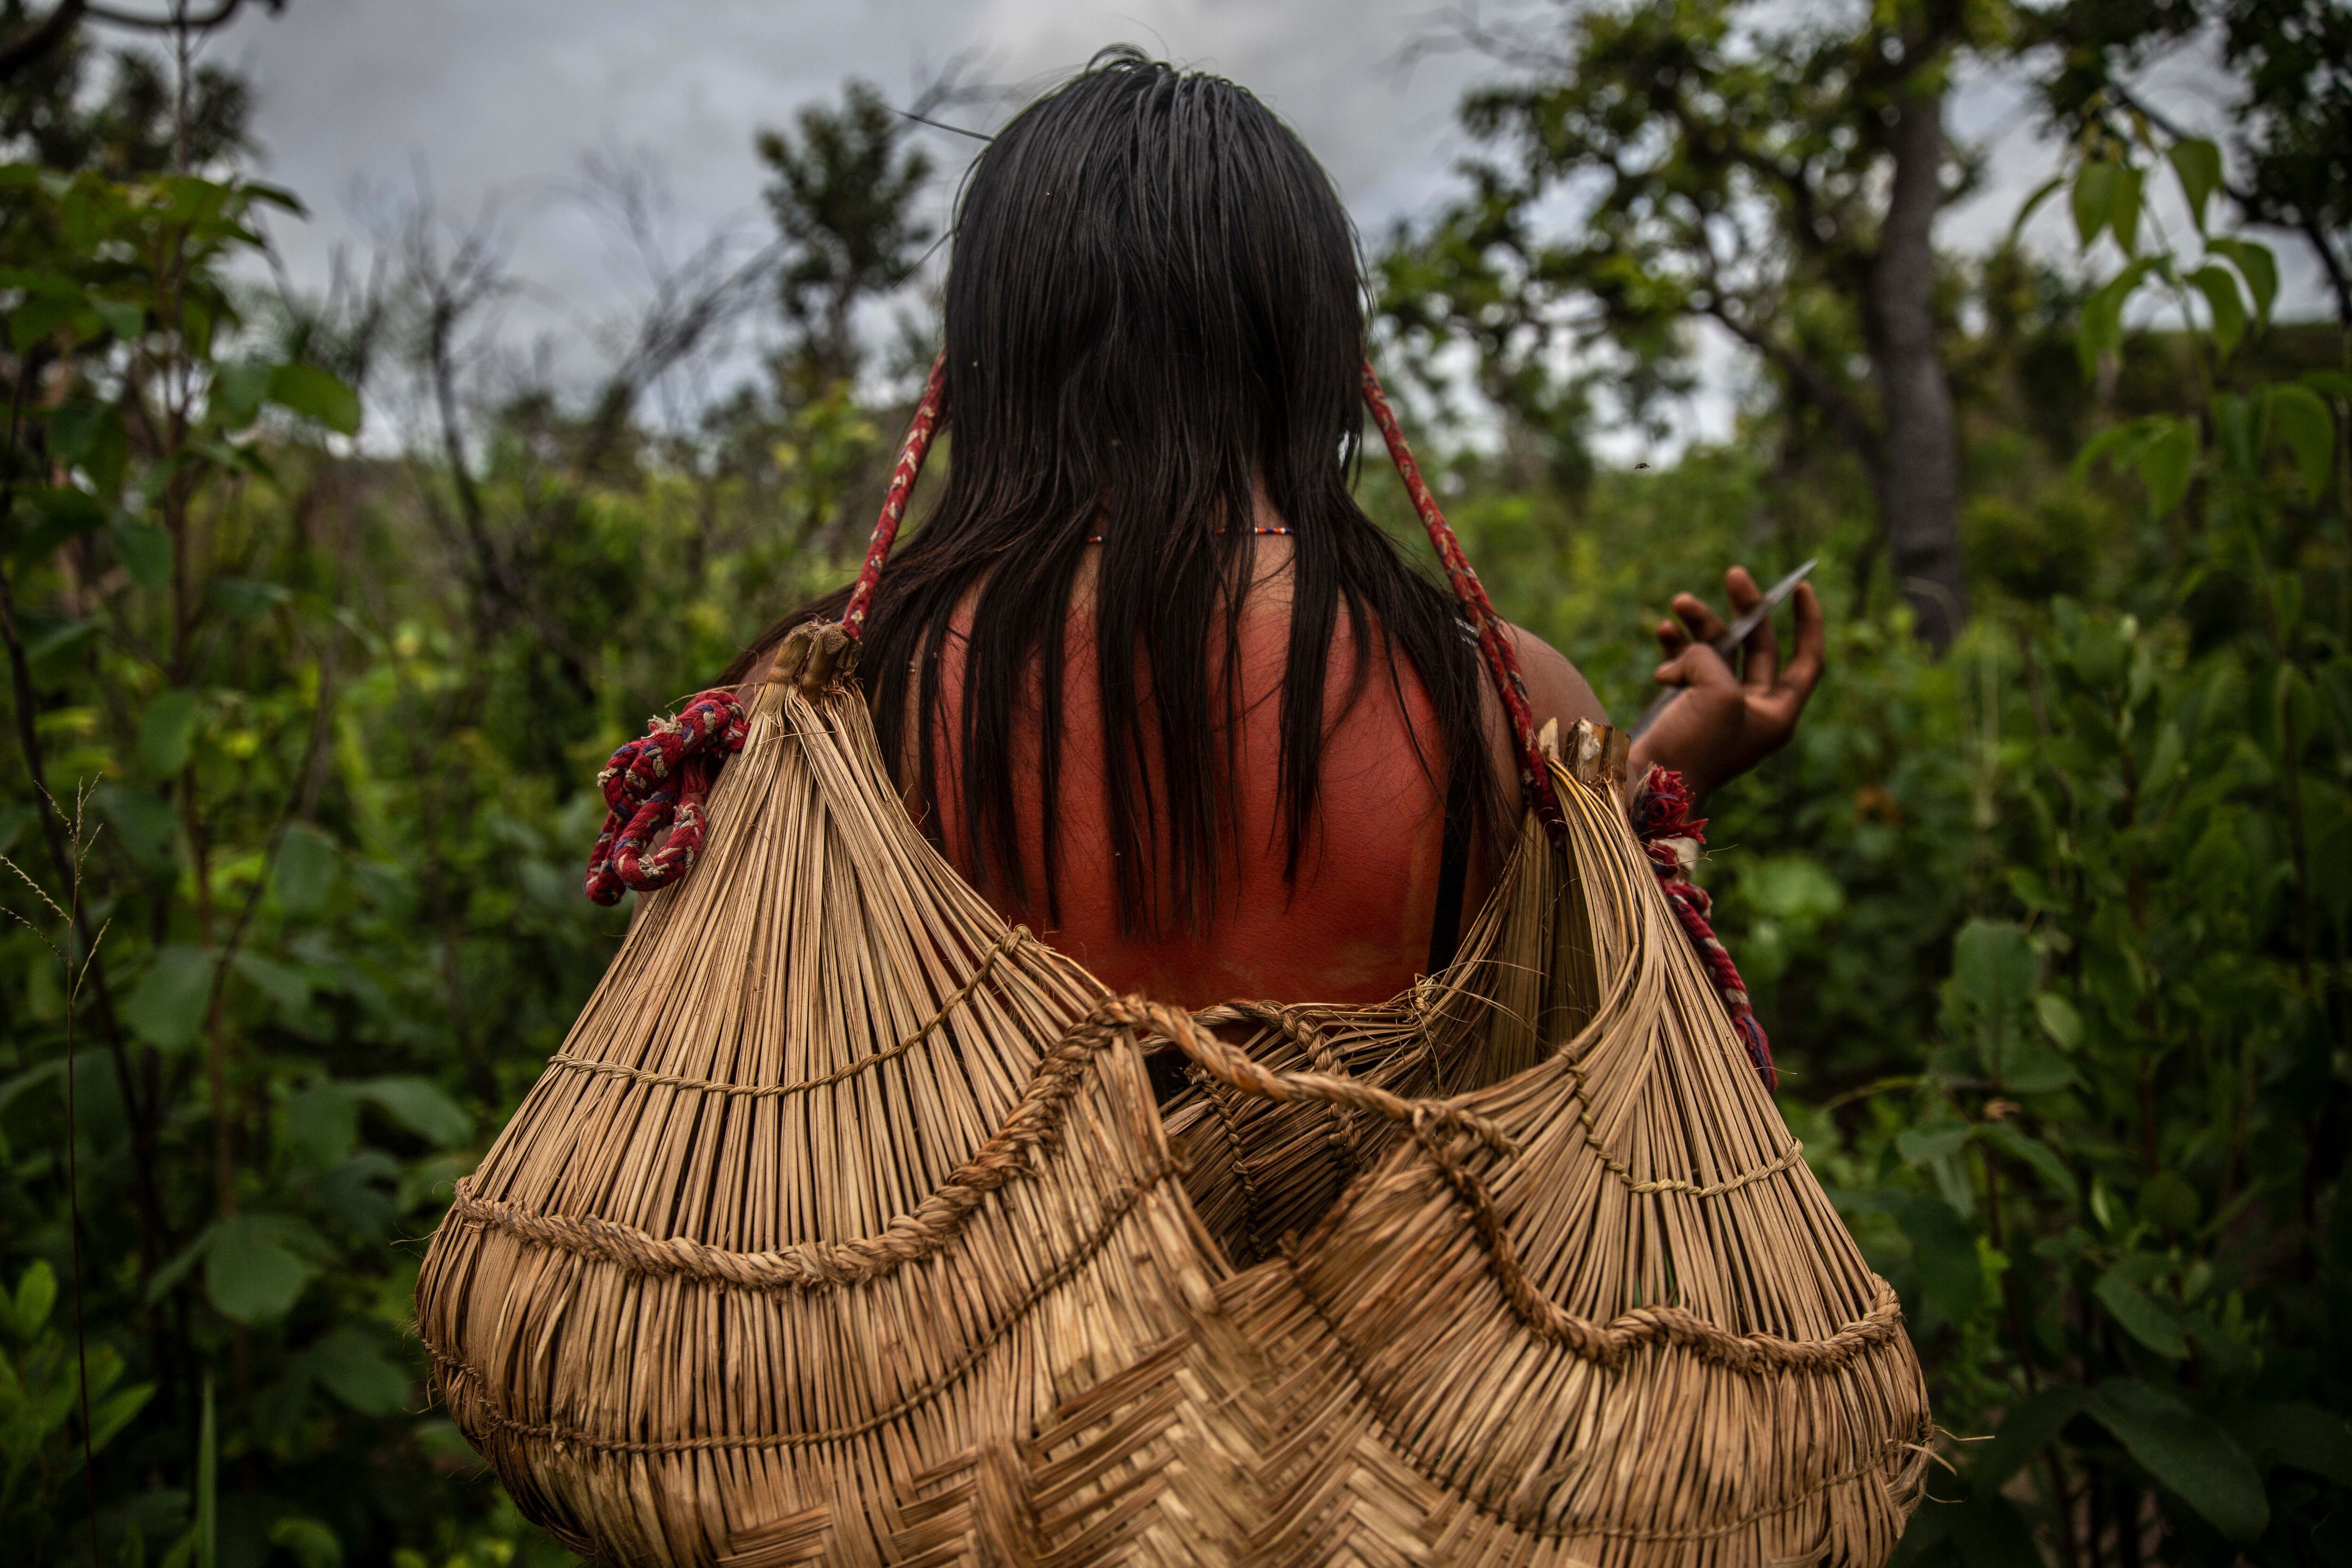 Heloisa se mueve con una cesta de frutas y semillas en la cabeza durante un 'dzomori'.